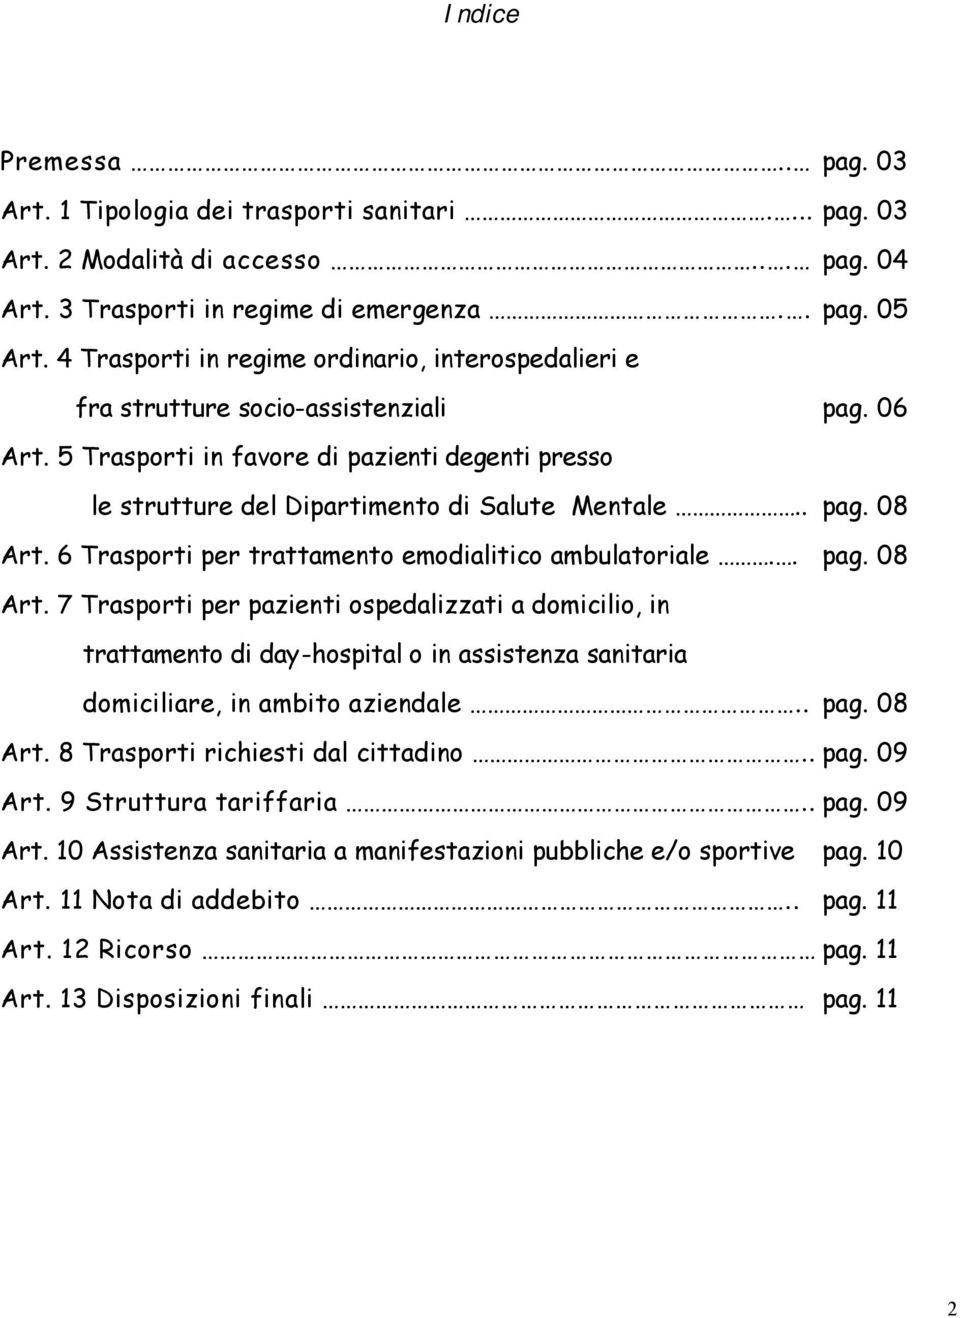 . pag. 08 Art. 6 Trasporti per trattamento emodialitico ambulatoriale.. pag. 08 Art. 7 Trasporti per pazienti ospedalizzati a domicilio, in trattamento di day-hospital o in assistenza sanitaria domiciliare, in ambito aziendale.